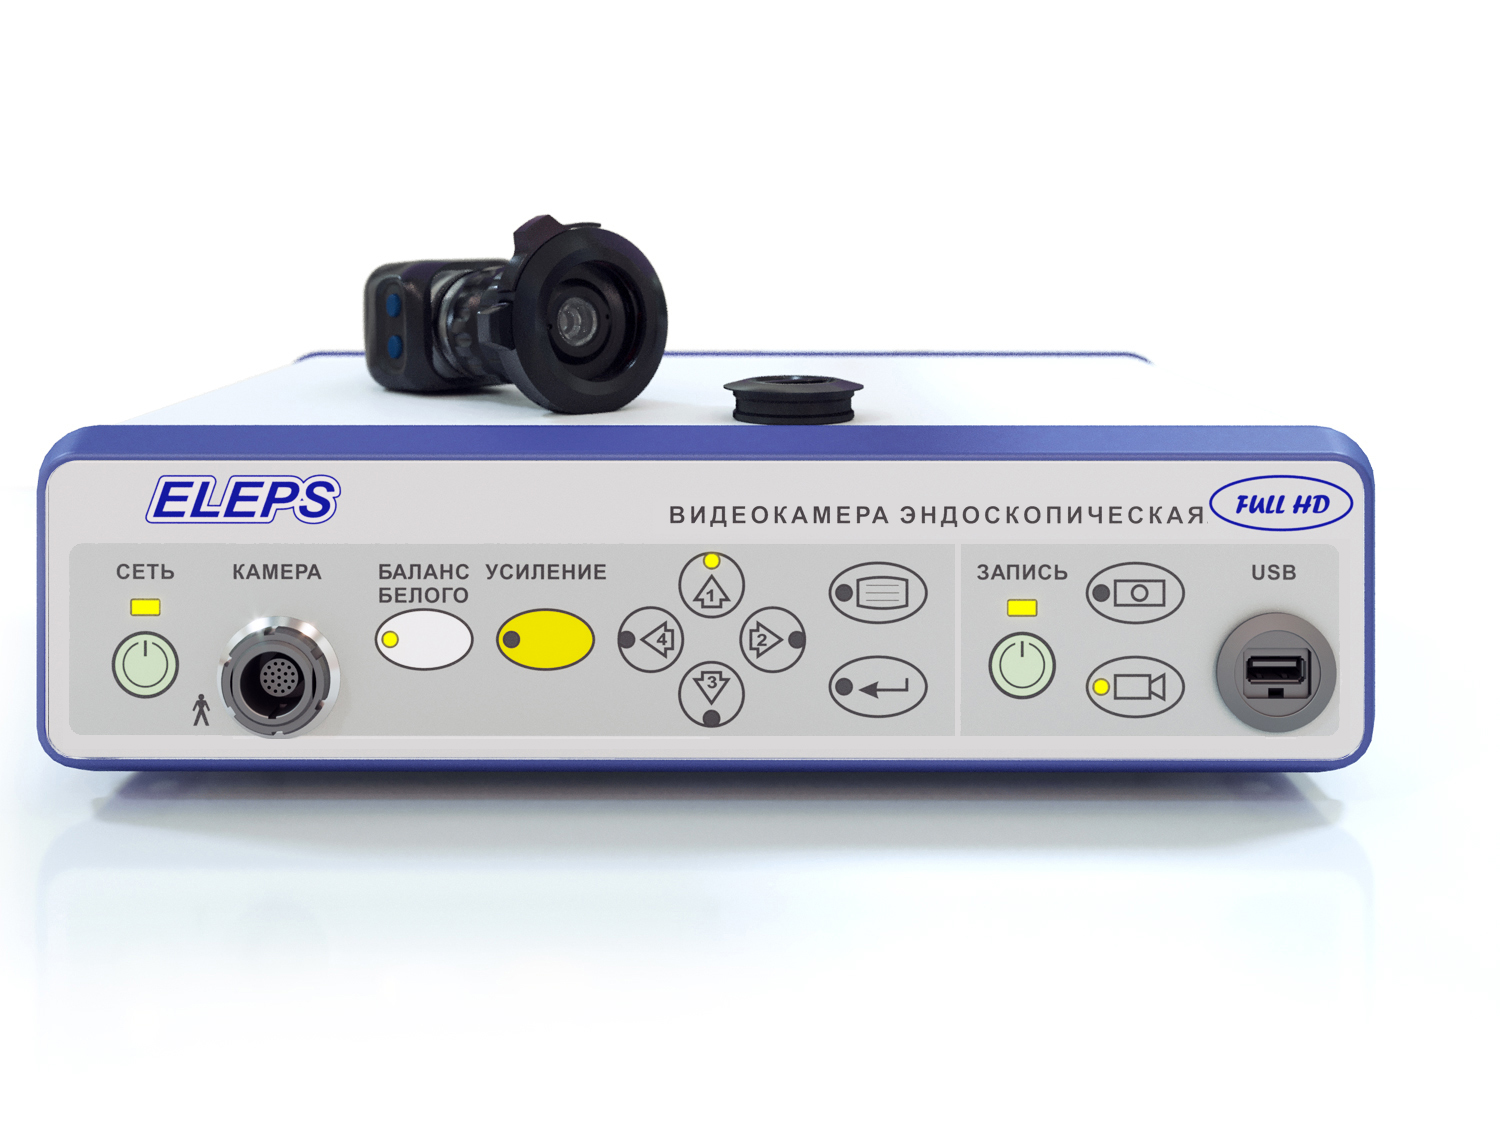 Видеокамера эндоскопическая Full HD с устройством записи (ZOOM)